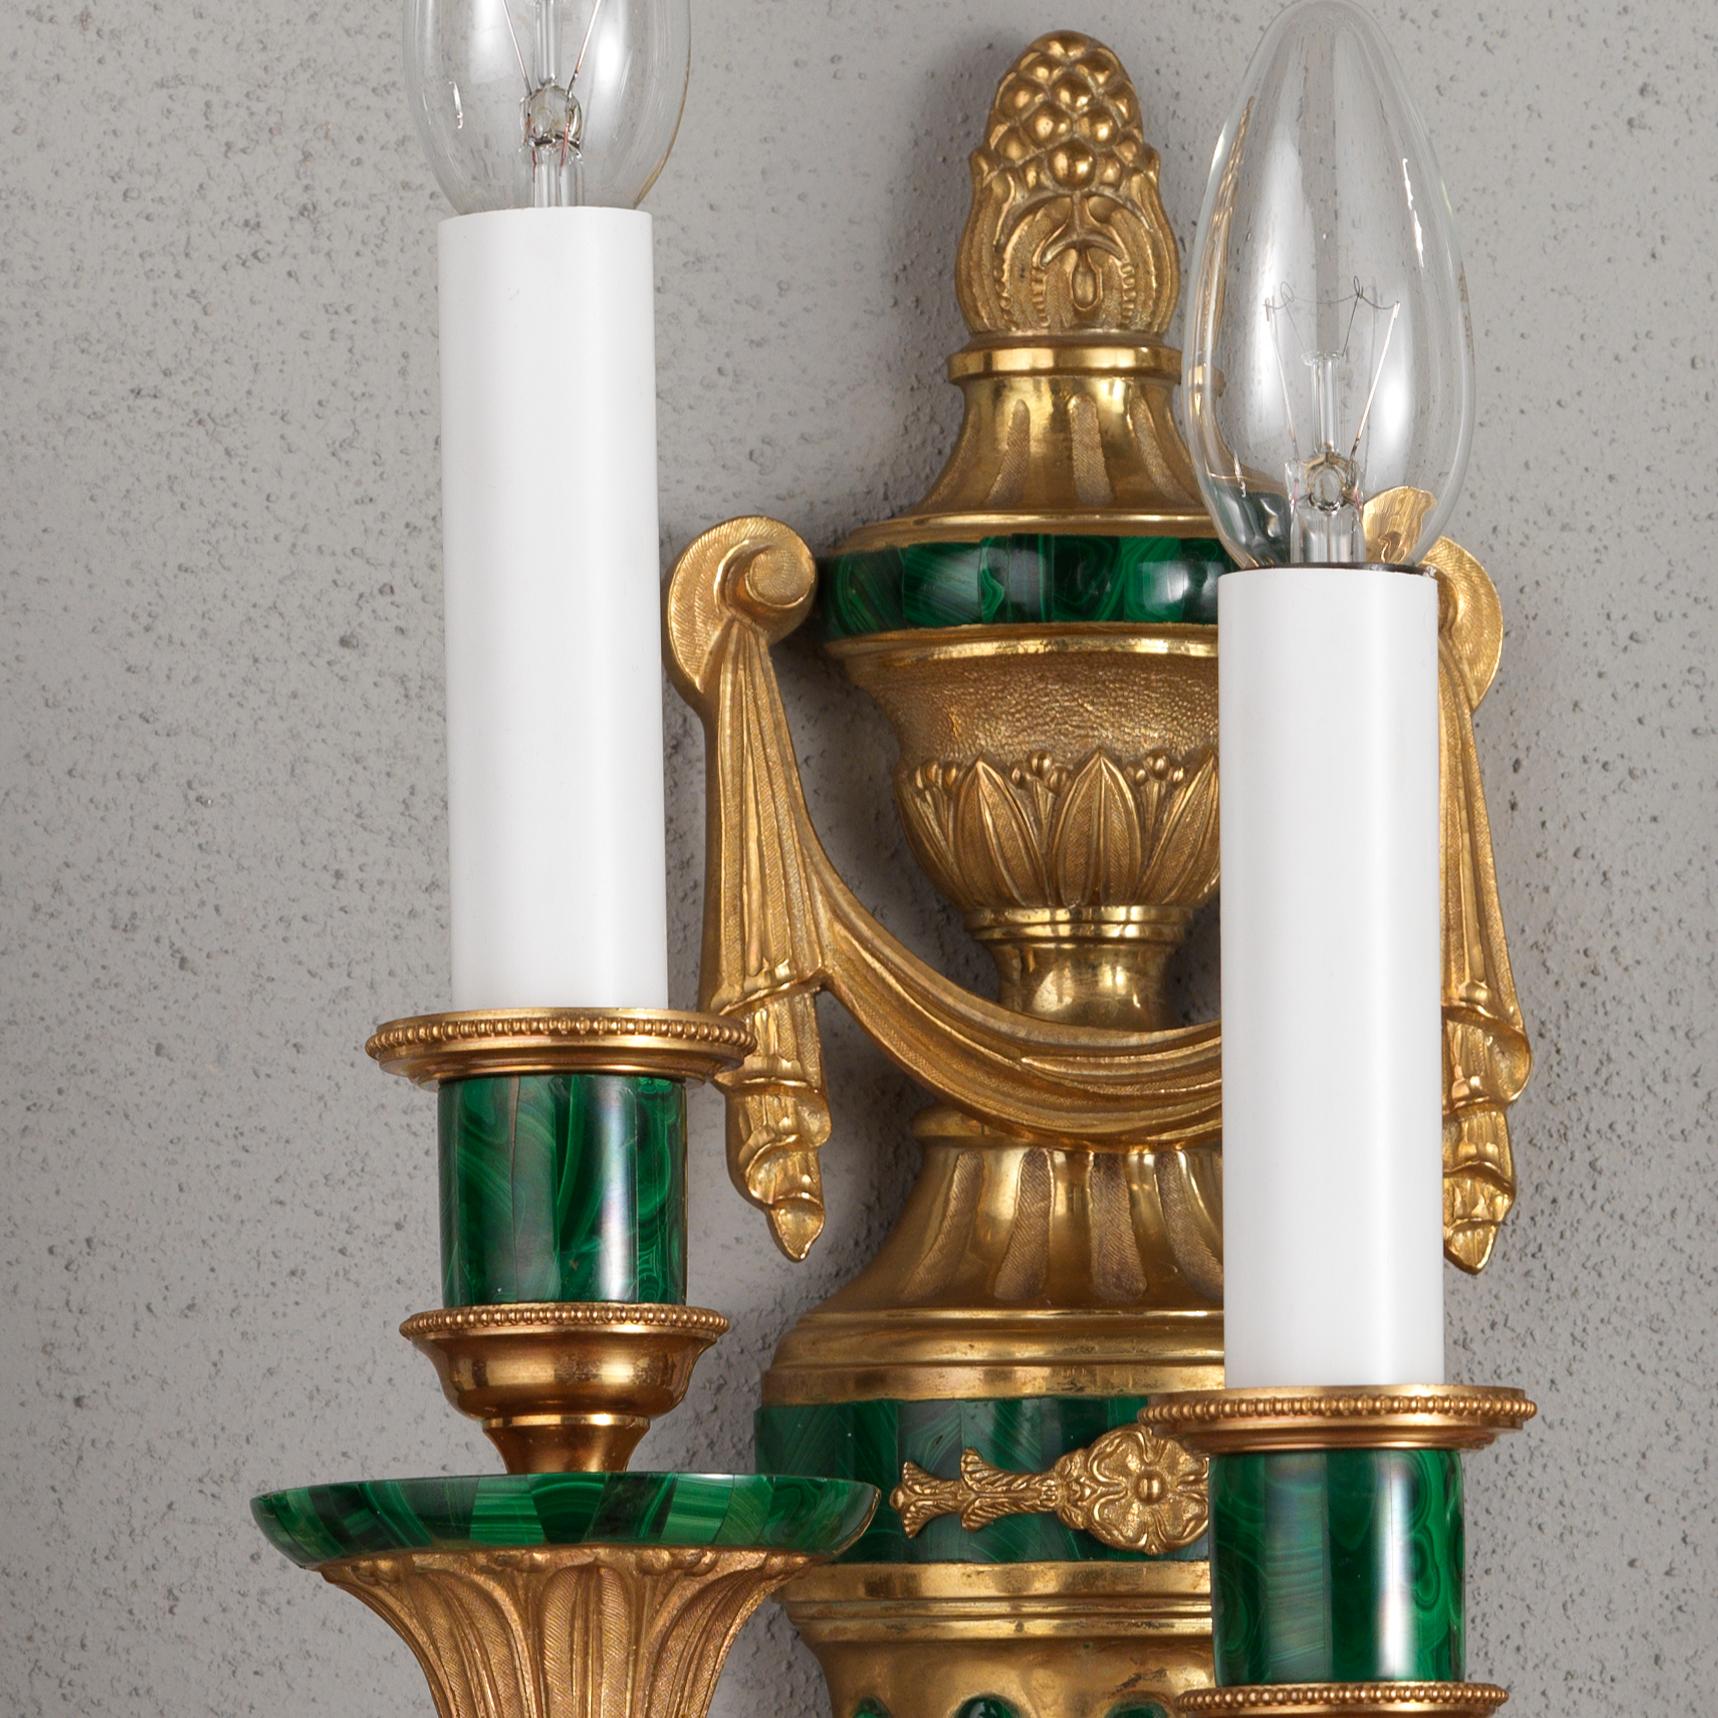 Cette applique de style Louis XVI en bronze doré et placage de malachite de Gherardo Degli Albizz présente de nombreux détails ciselés à la main de grande qualité, enrichis par le placage de malachite. Au sommet se trouve une urne avec un fleuron en